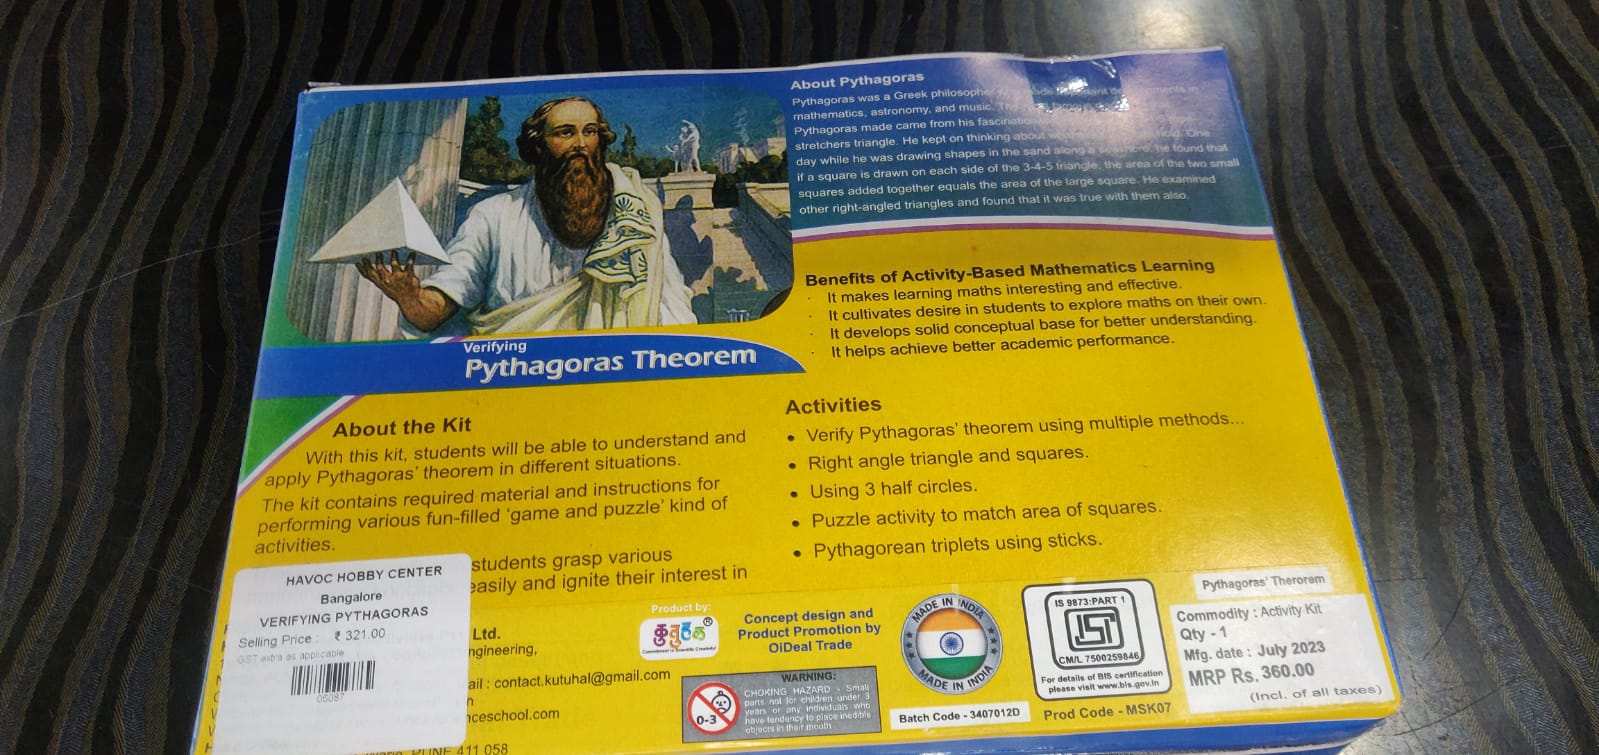 VERIFYING PYTHAGORAS THEOREM